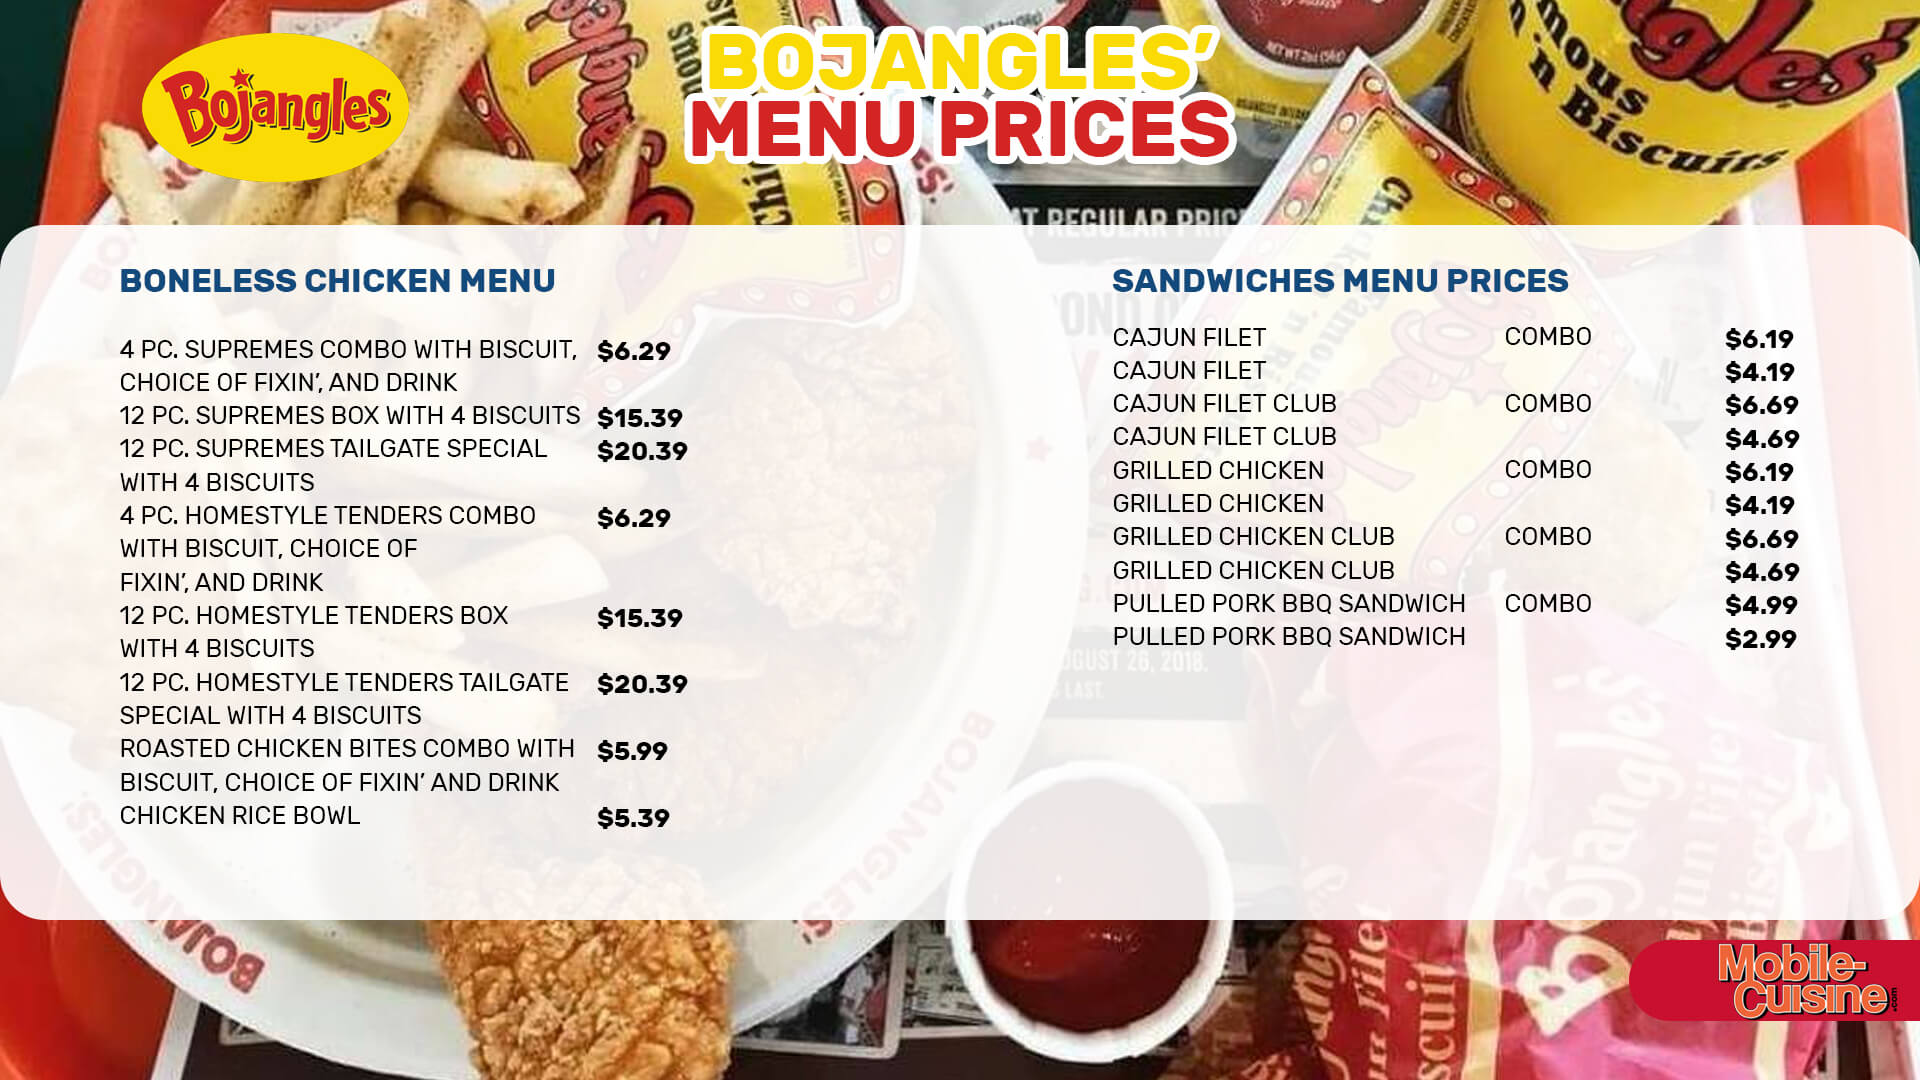 Bojangles menu prices